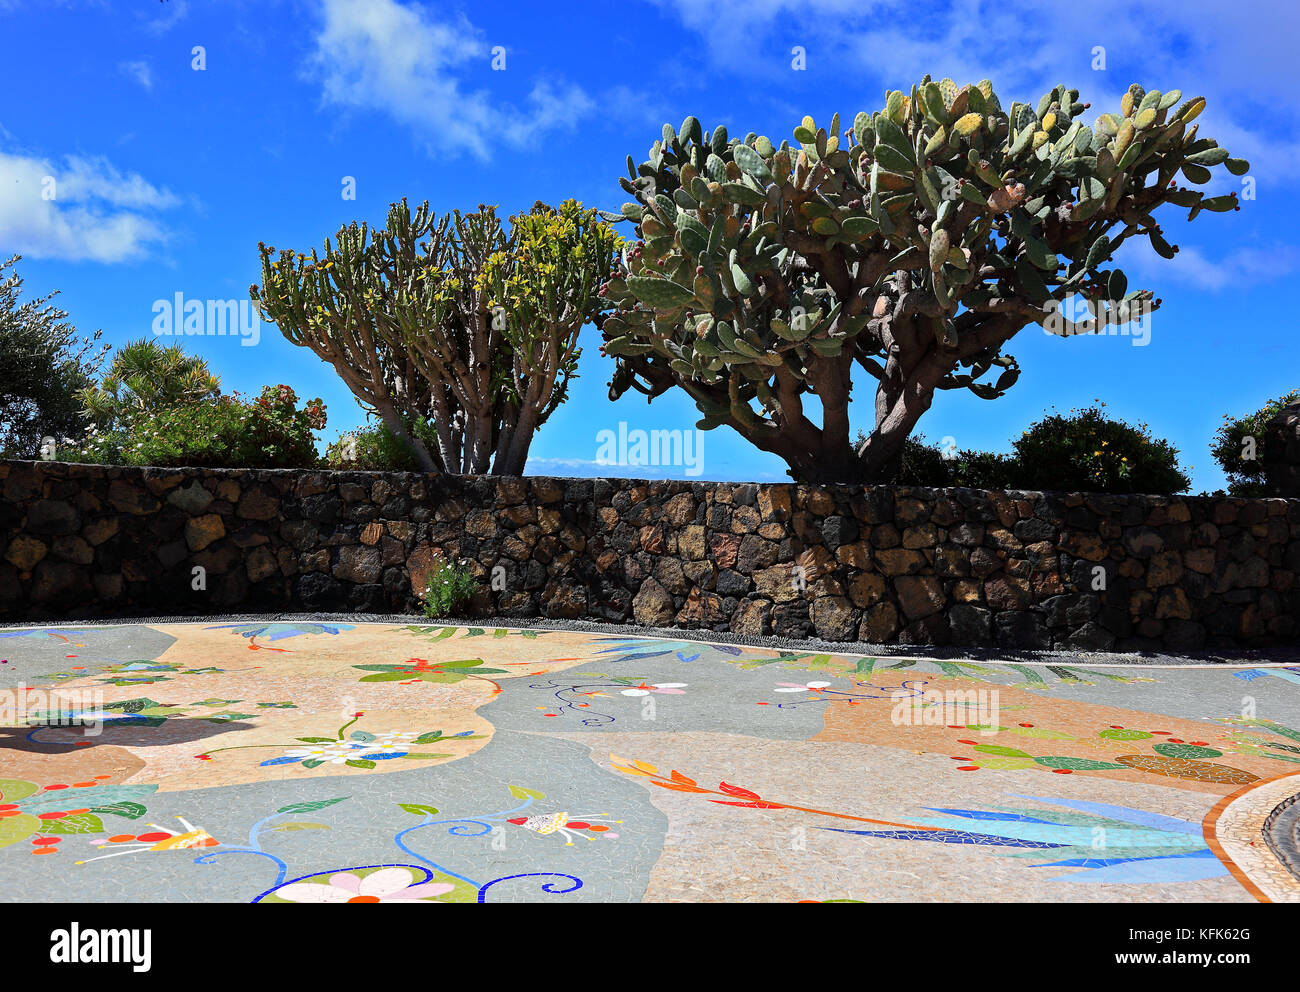 La Palma, Isola Canarie, Las Manchas regione, una piazza fatta di mosaici, piante e vulcani, Plaza La Glorieta, dall'artista Luis Morera, in littl Foto Stock